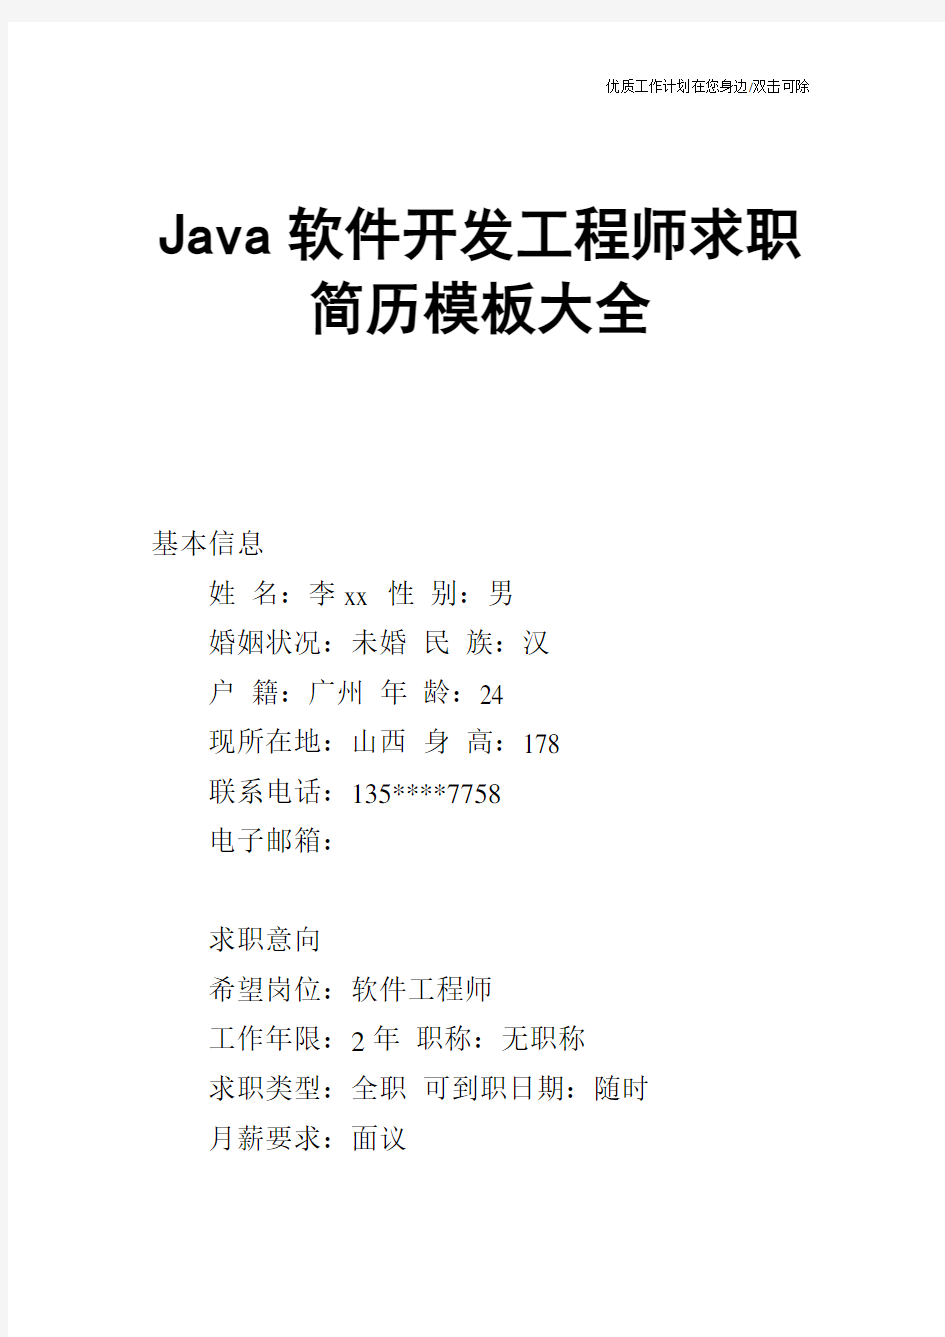 【个人简历】Java软件开发工程师求职简历模板大全